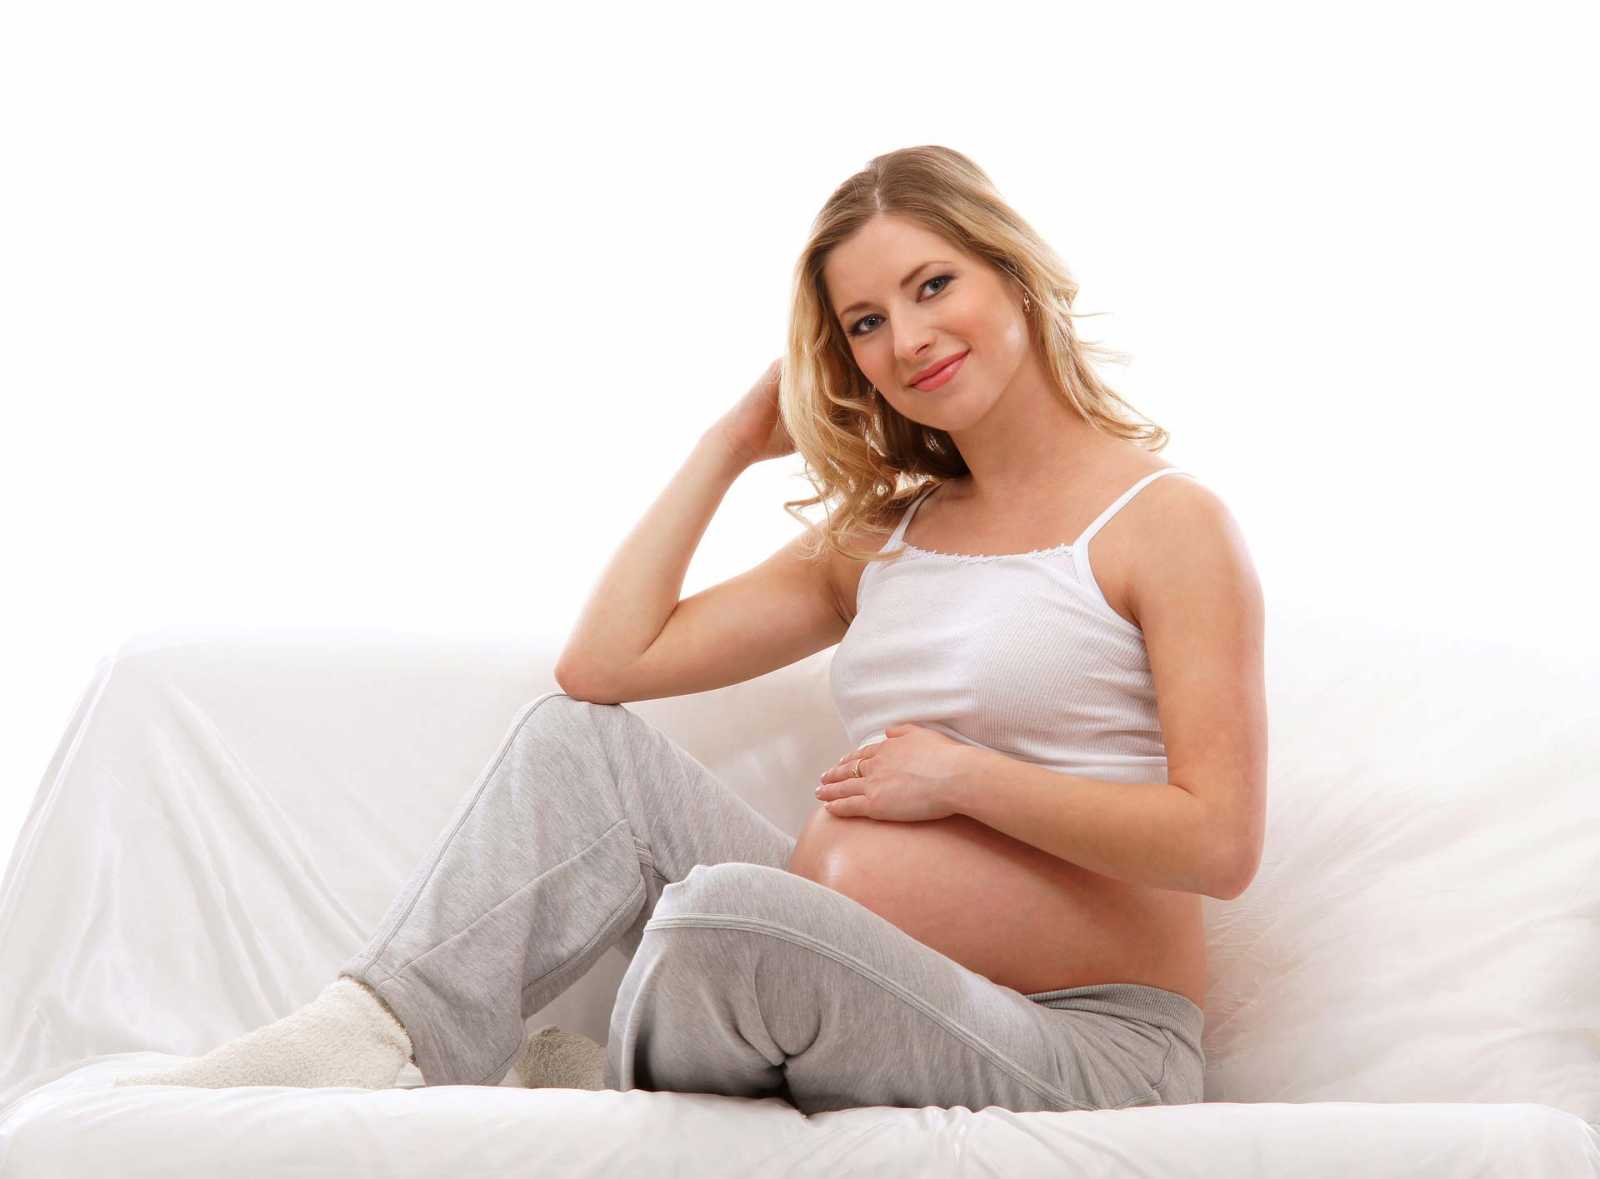 Εγκυμοσύνη και κιρσοί κάτω άκρων – Τι πραγματικά ισχύει;